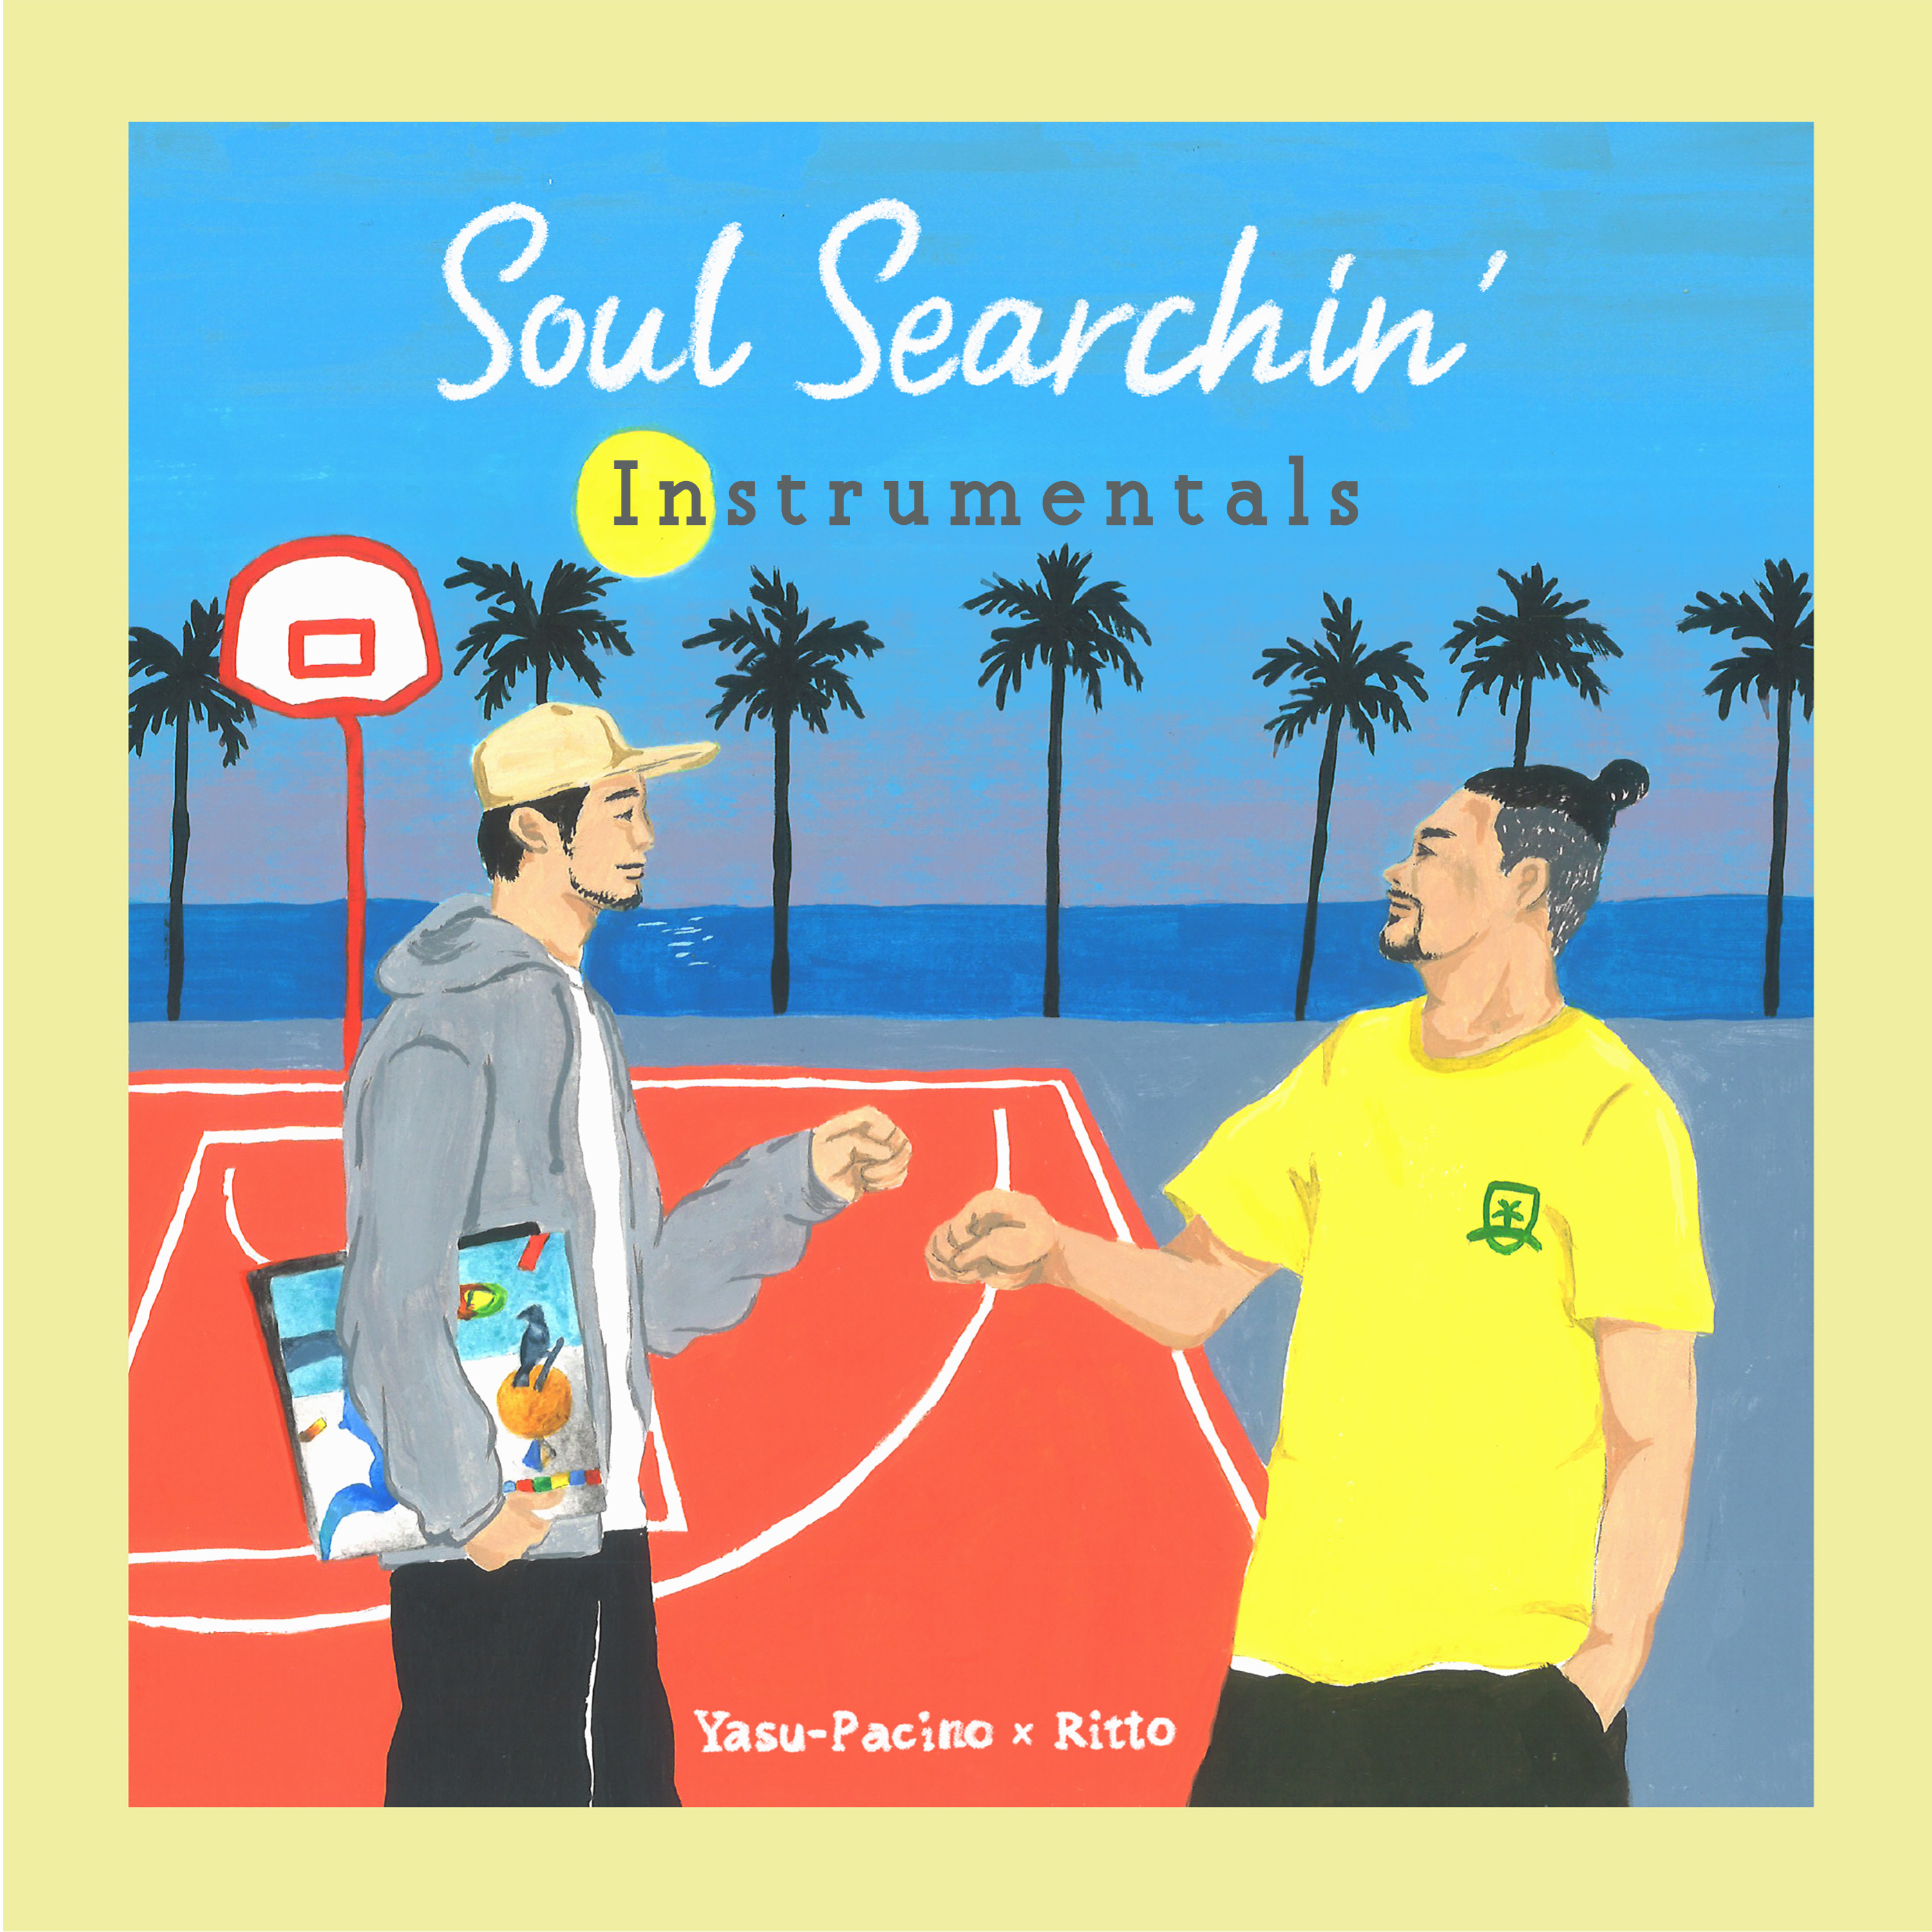 Yasu-Pacino x Ritto / Soul Searchin' Instrumentals